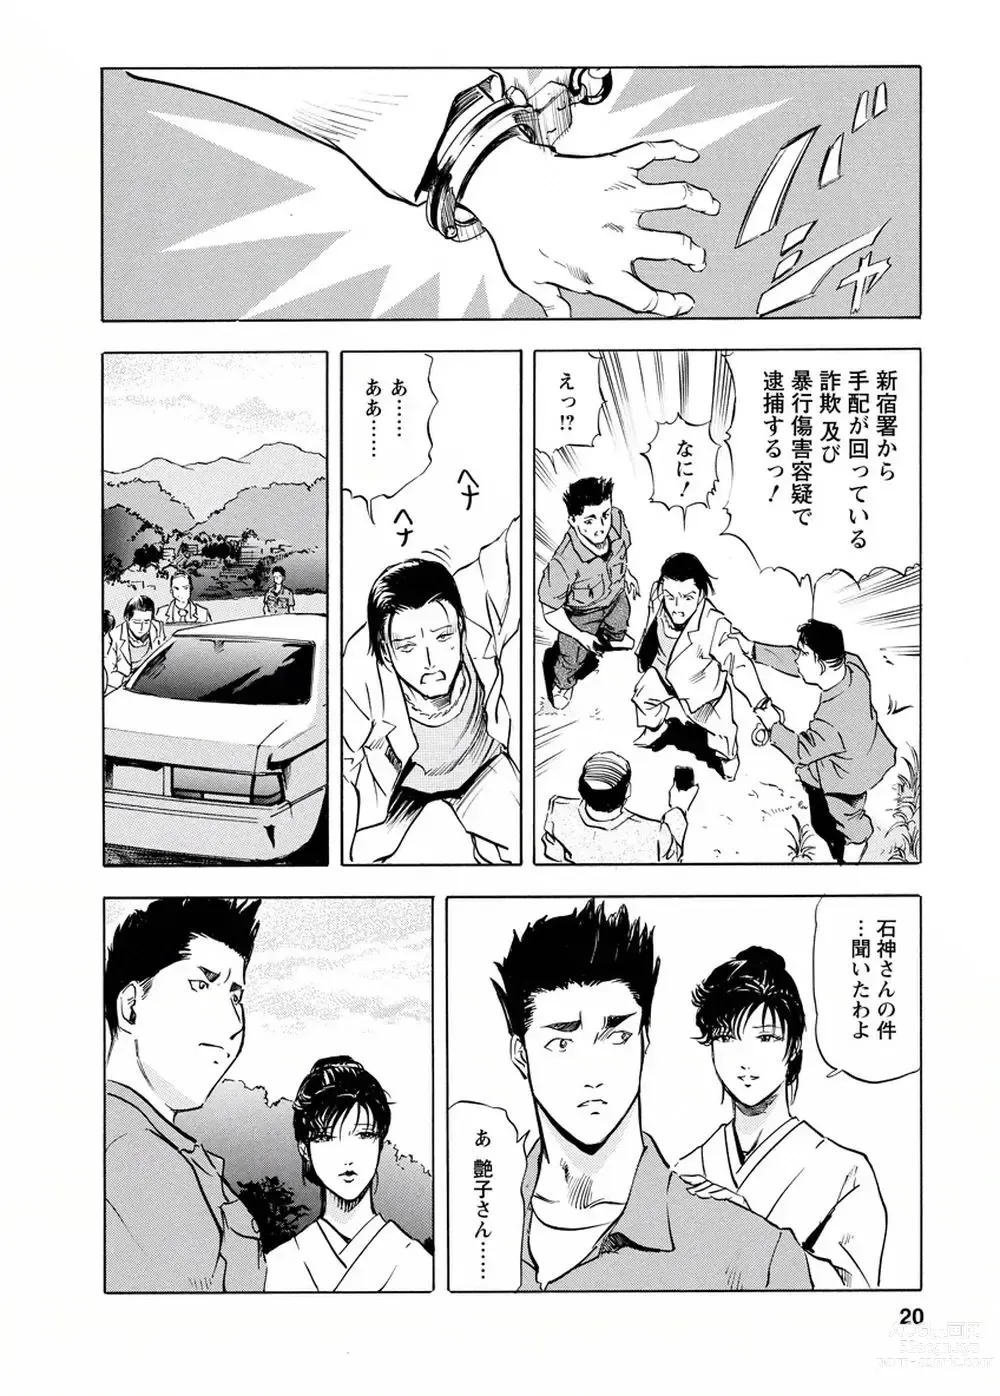 Page 19 of manga Tsuyako no Yu Vol.4